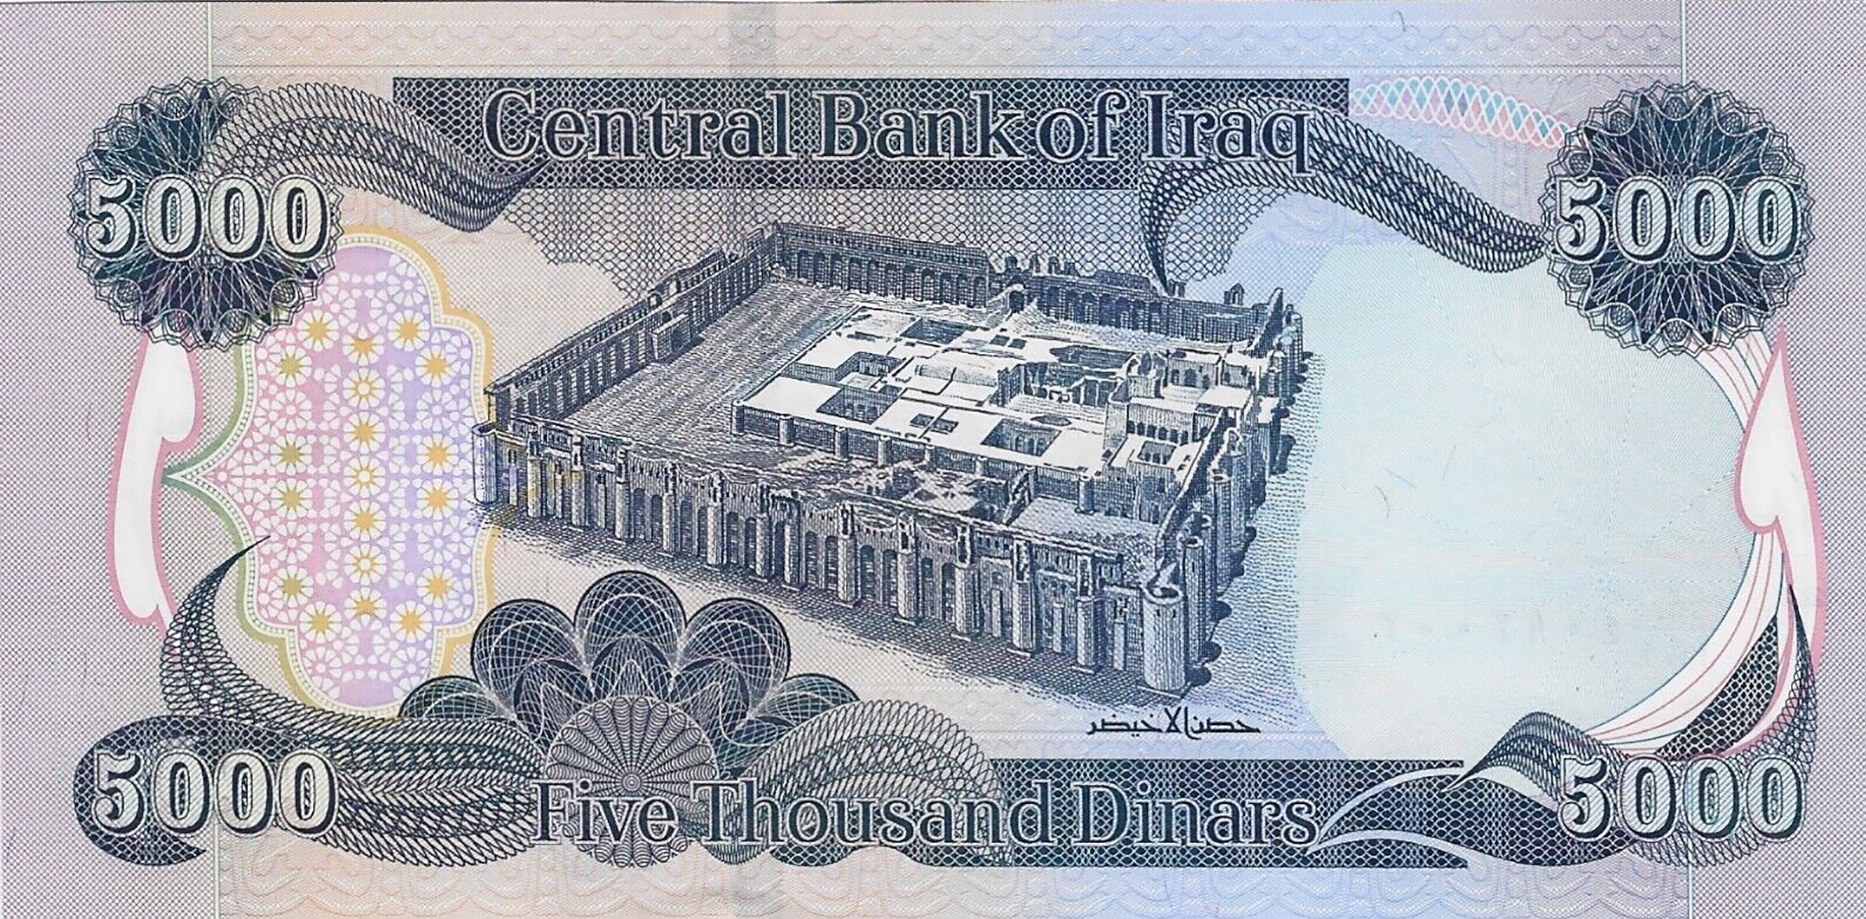 Iraq_CBI_5000_dinars_2013.00.00_B354b_P1